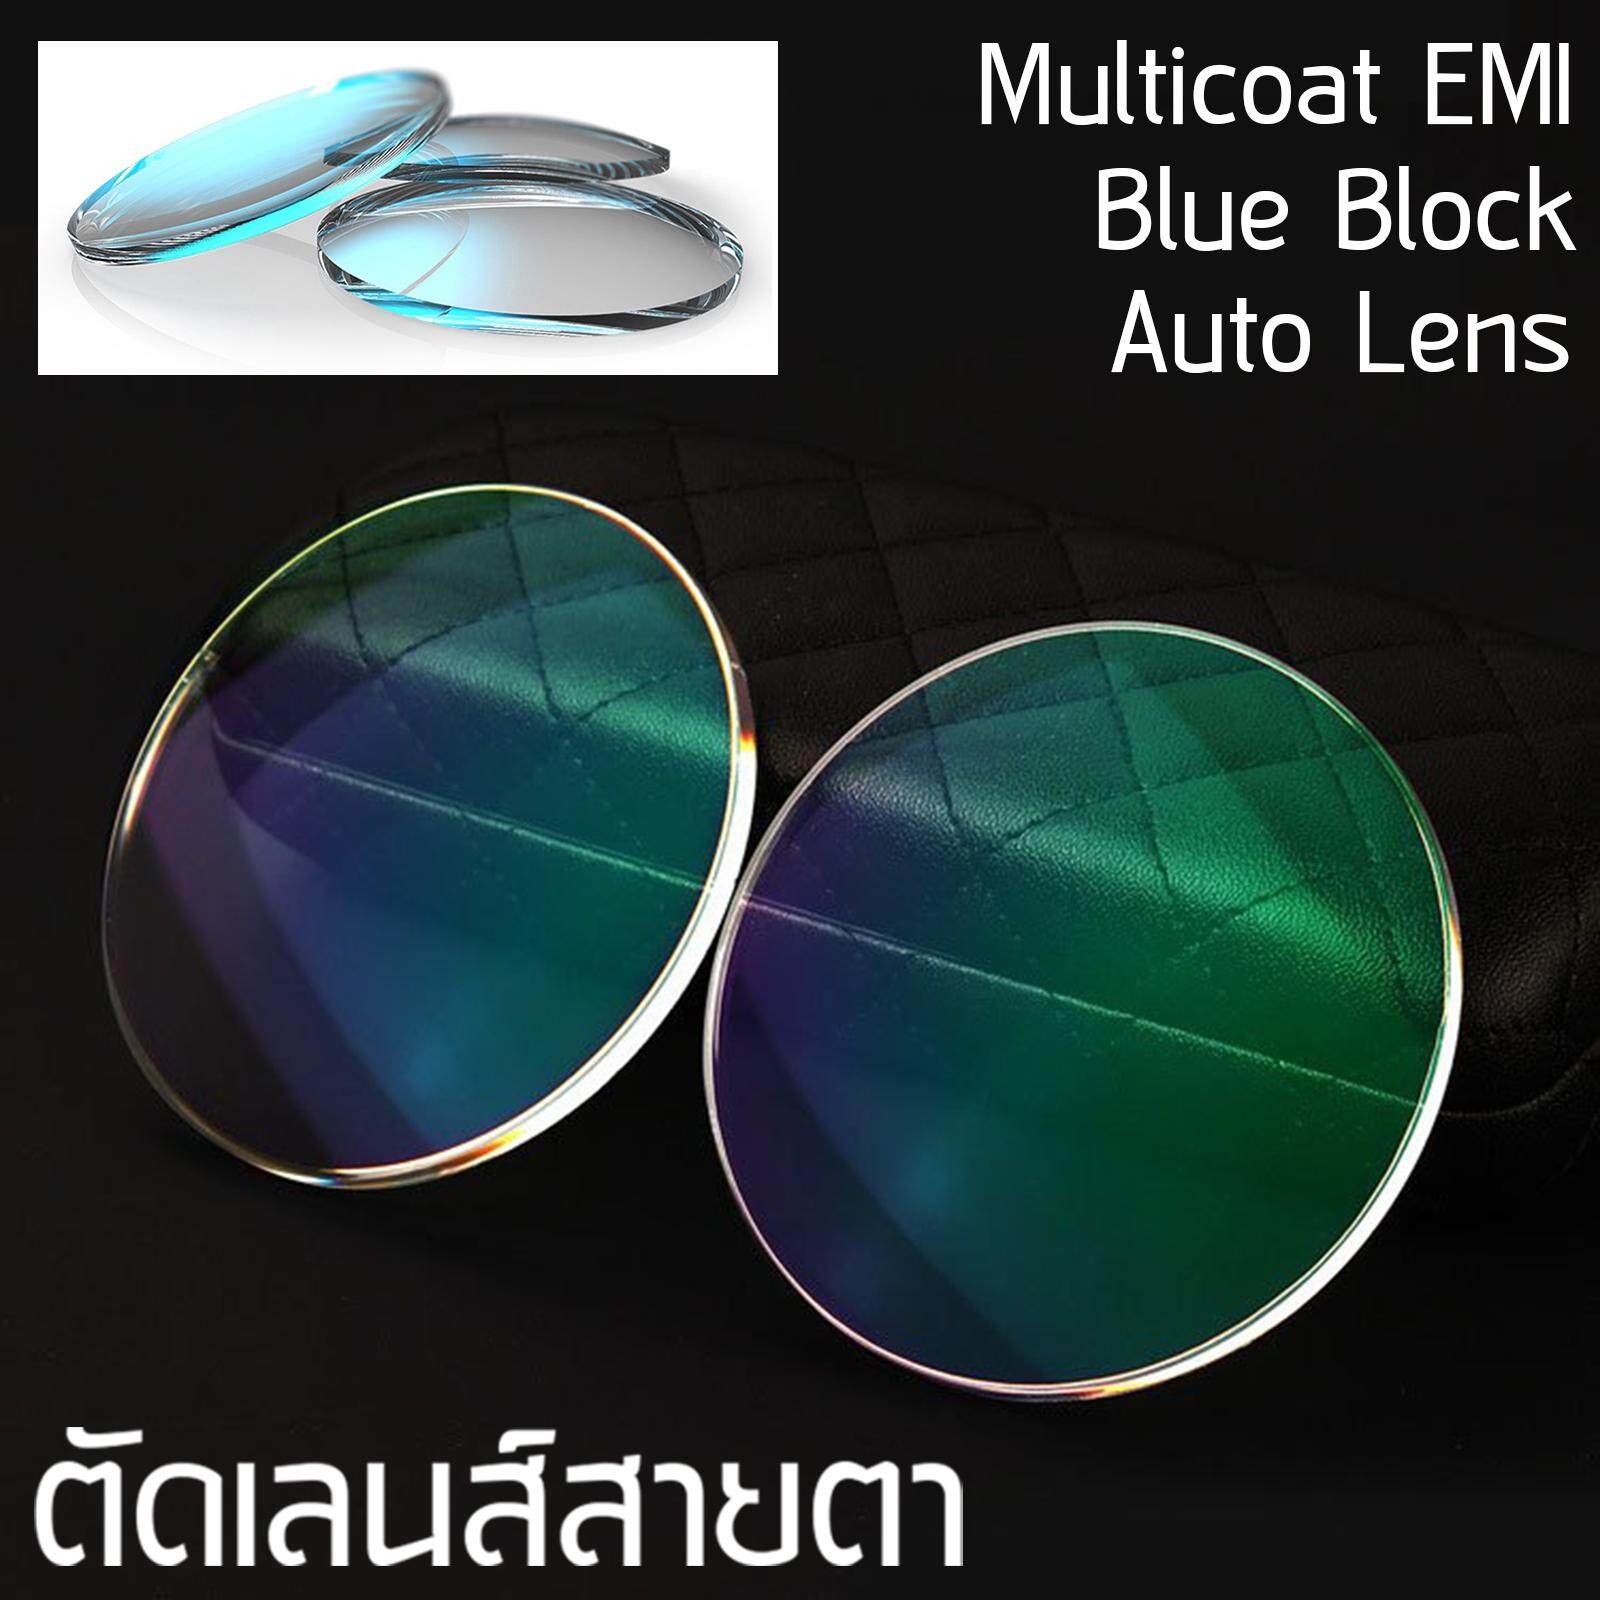 Focus Lens เลนส์โฟกัส รับตัดเลนส์สายตา ทุกชนิด เลนส์กรองแสง BlueBlock บลูบล็อค เลนส์ปรับแสง Auto เปลี่ยนสี เลนส์มัลติโค๊ต Multicoat Computer กรองแสงคอม มือถือ ป้องกันแสงสีฟ้า UV สายตาสั้น สายตายาว สายตาเอียง ราคาเลนส์ไม่รวมกรอบแว่นตา